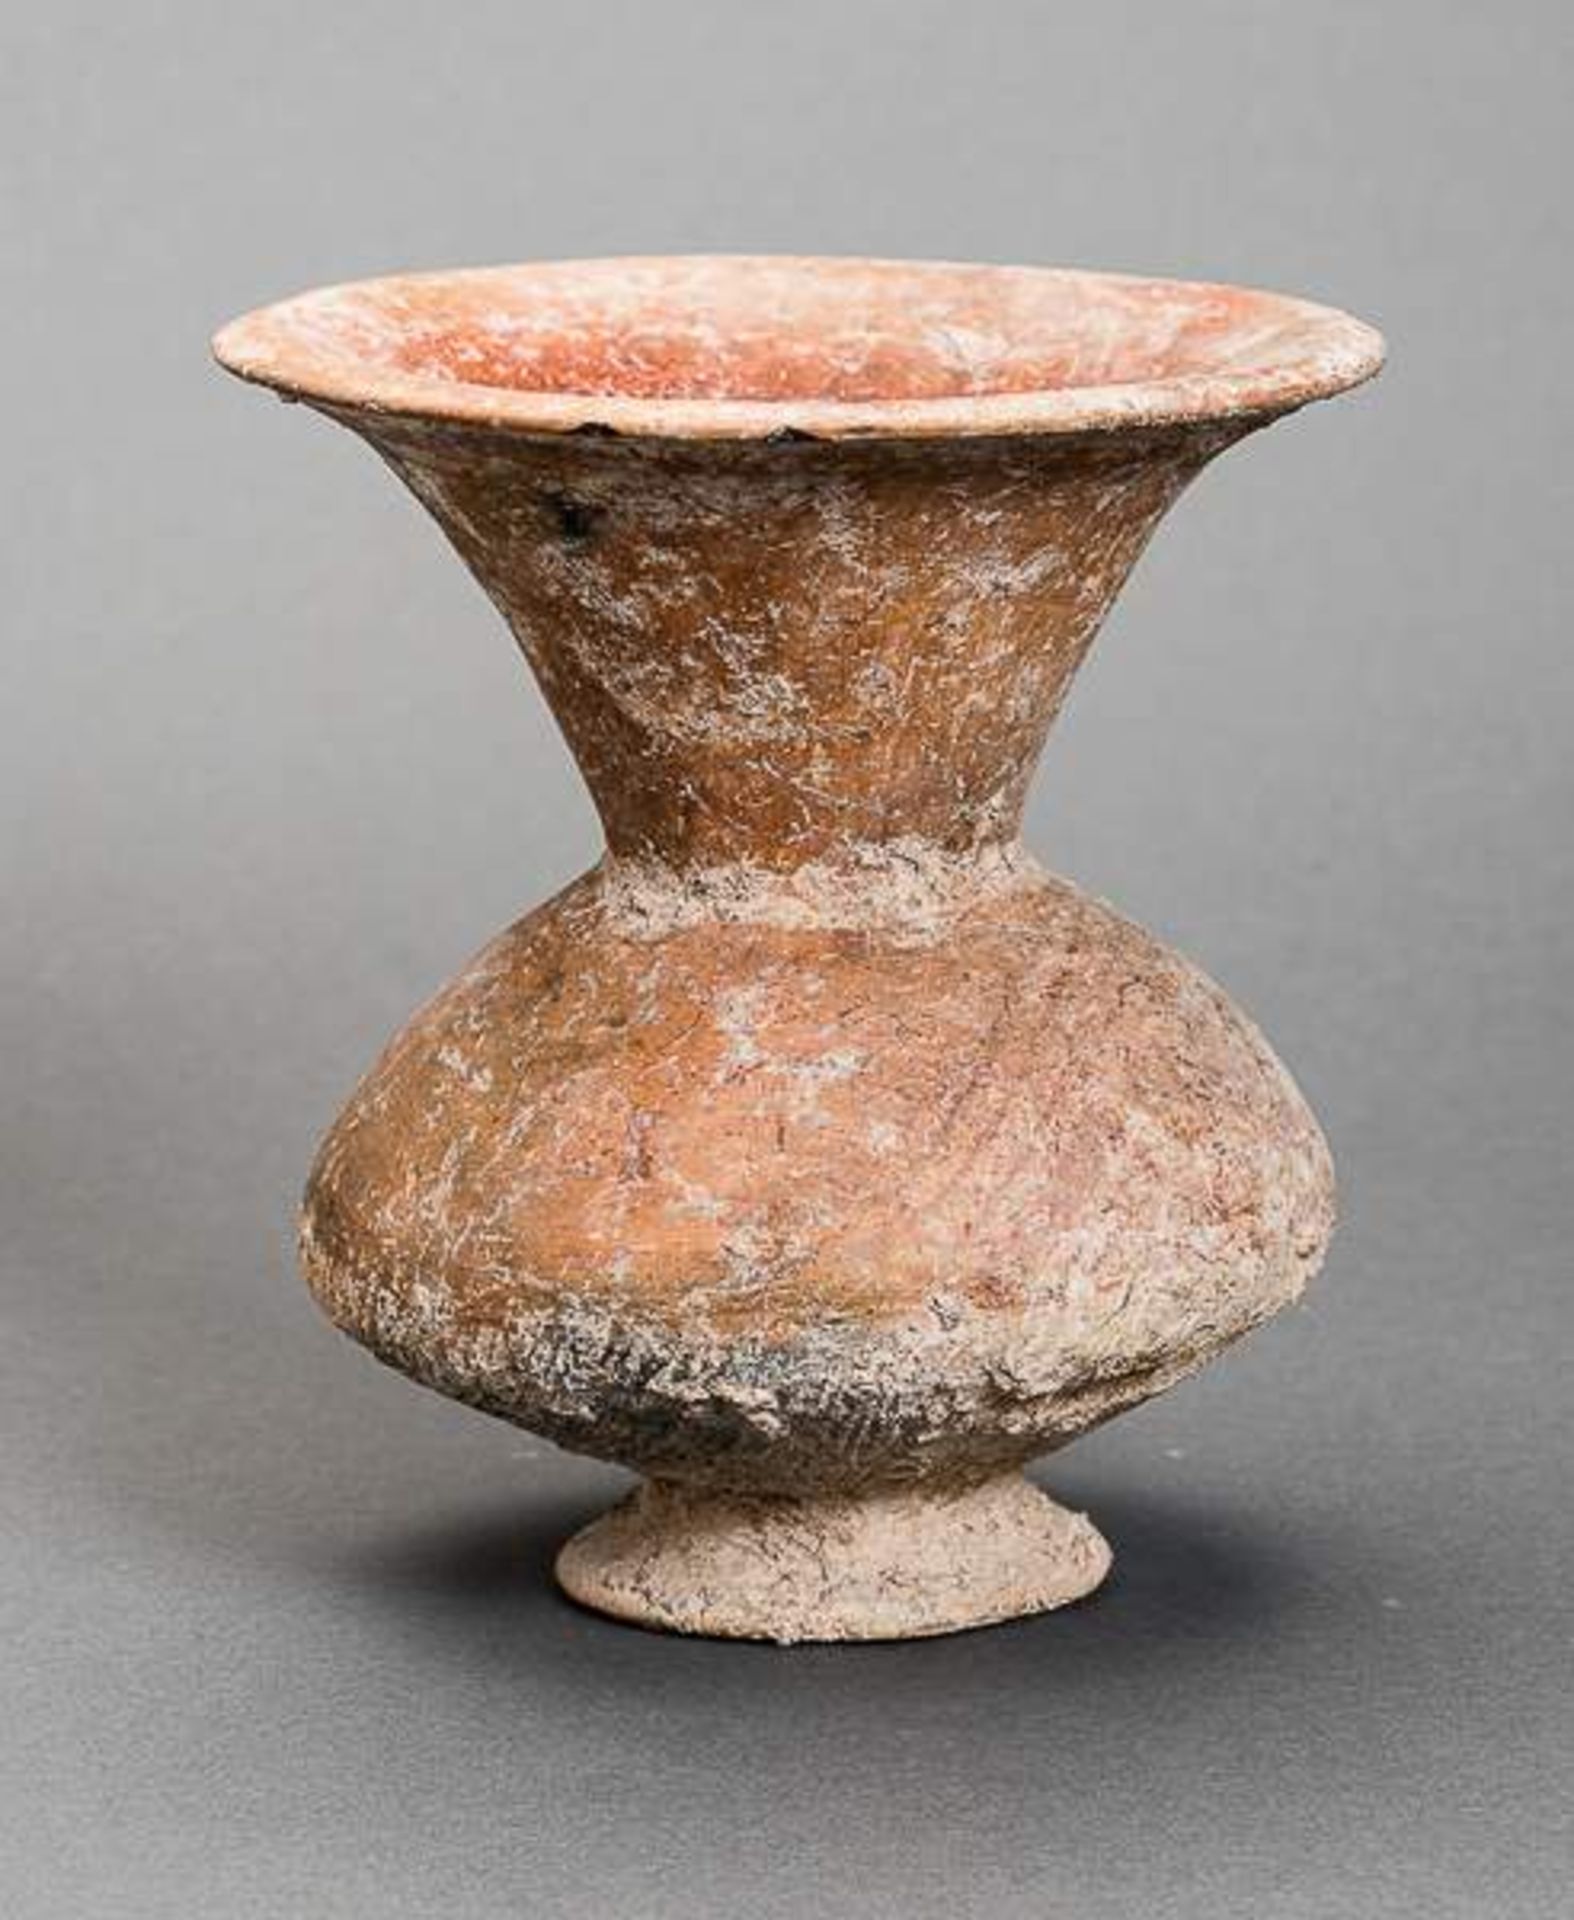 KELCHFÖRMIGES ARCHAISCHES GEFÄSS Bemalte Keramik. Ban Chiang, späte neolithische Zeit Schöne,